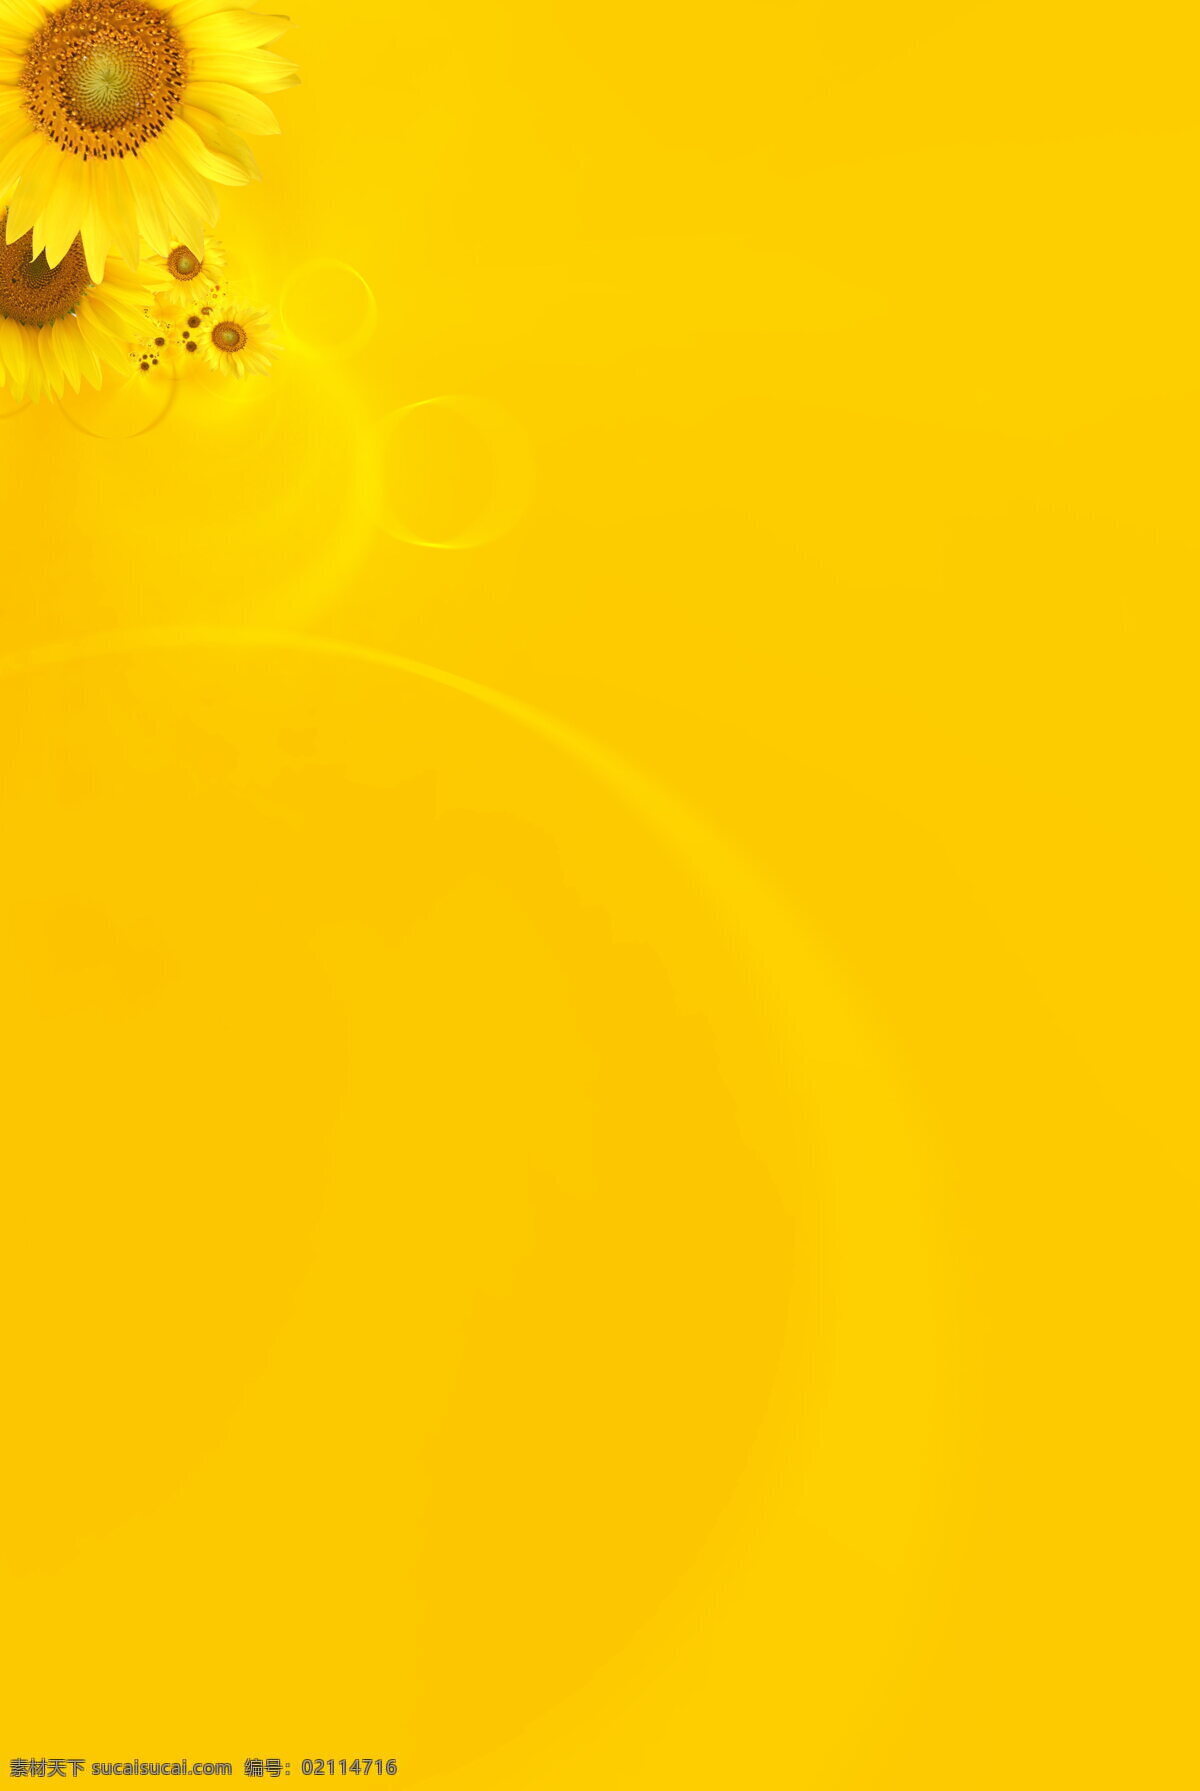 黄色背景 向日葵背景 花朵背景 花朵边框 黄色展板背景 黄色展板底图 黄色展板底纹 黄色底纹 背景底纹